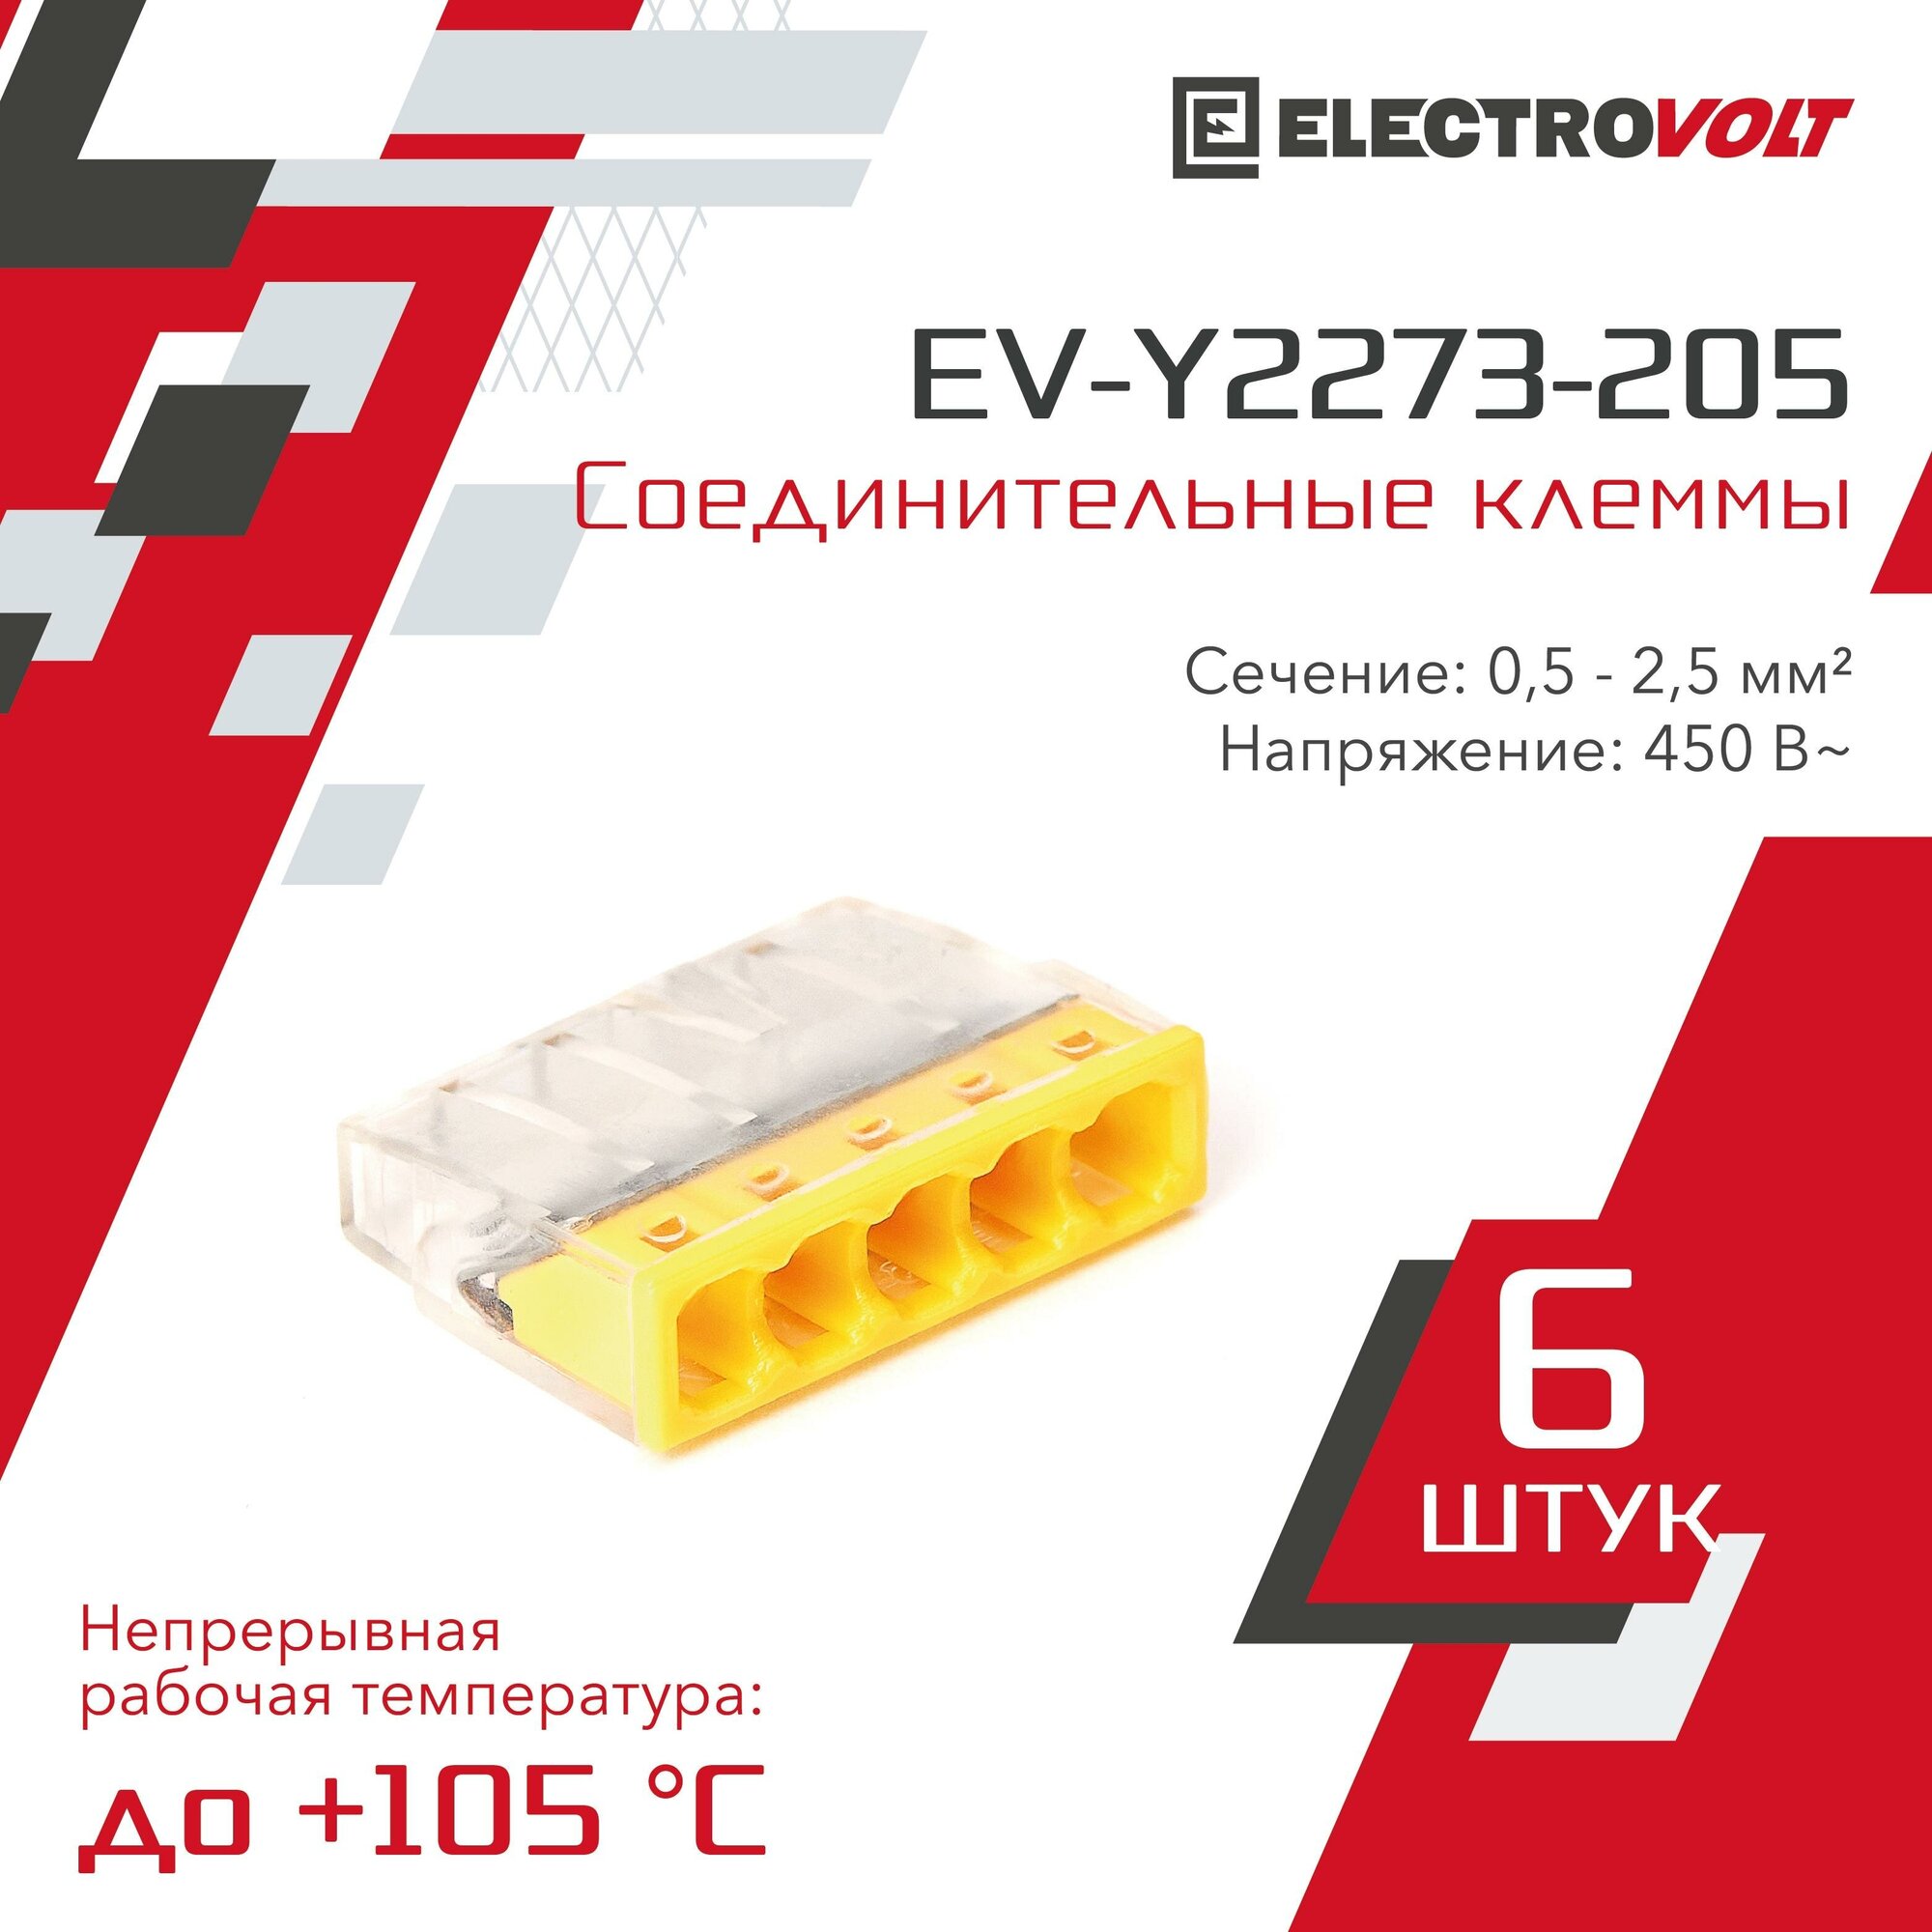 Компактная 5-проводная клемма ELECTROVOLT (EV-Y2273-205) 6 шт/уп